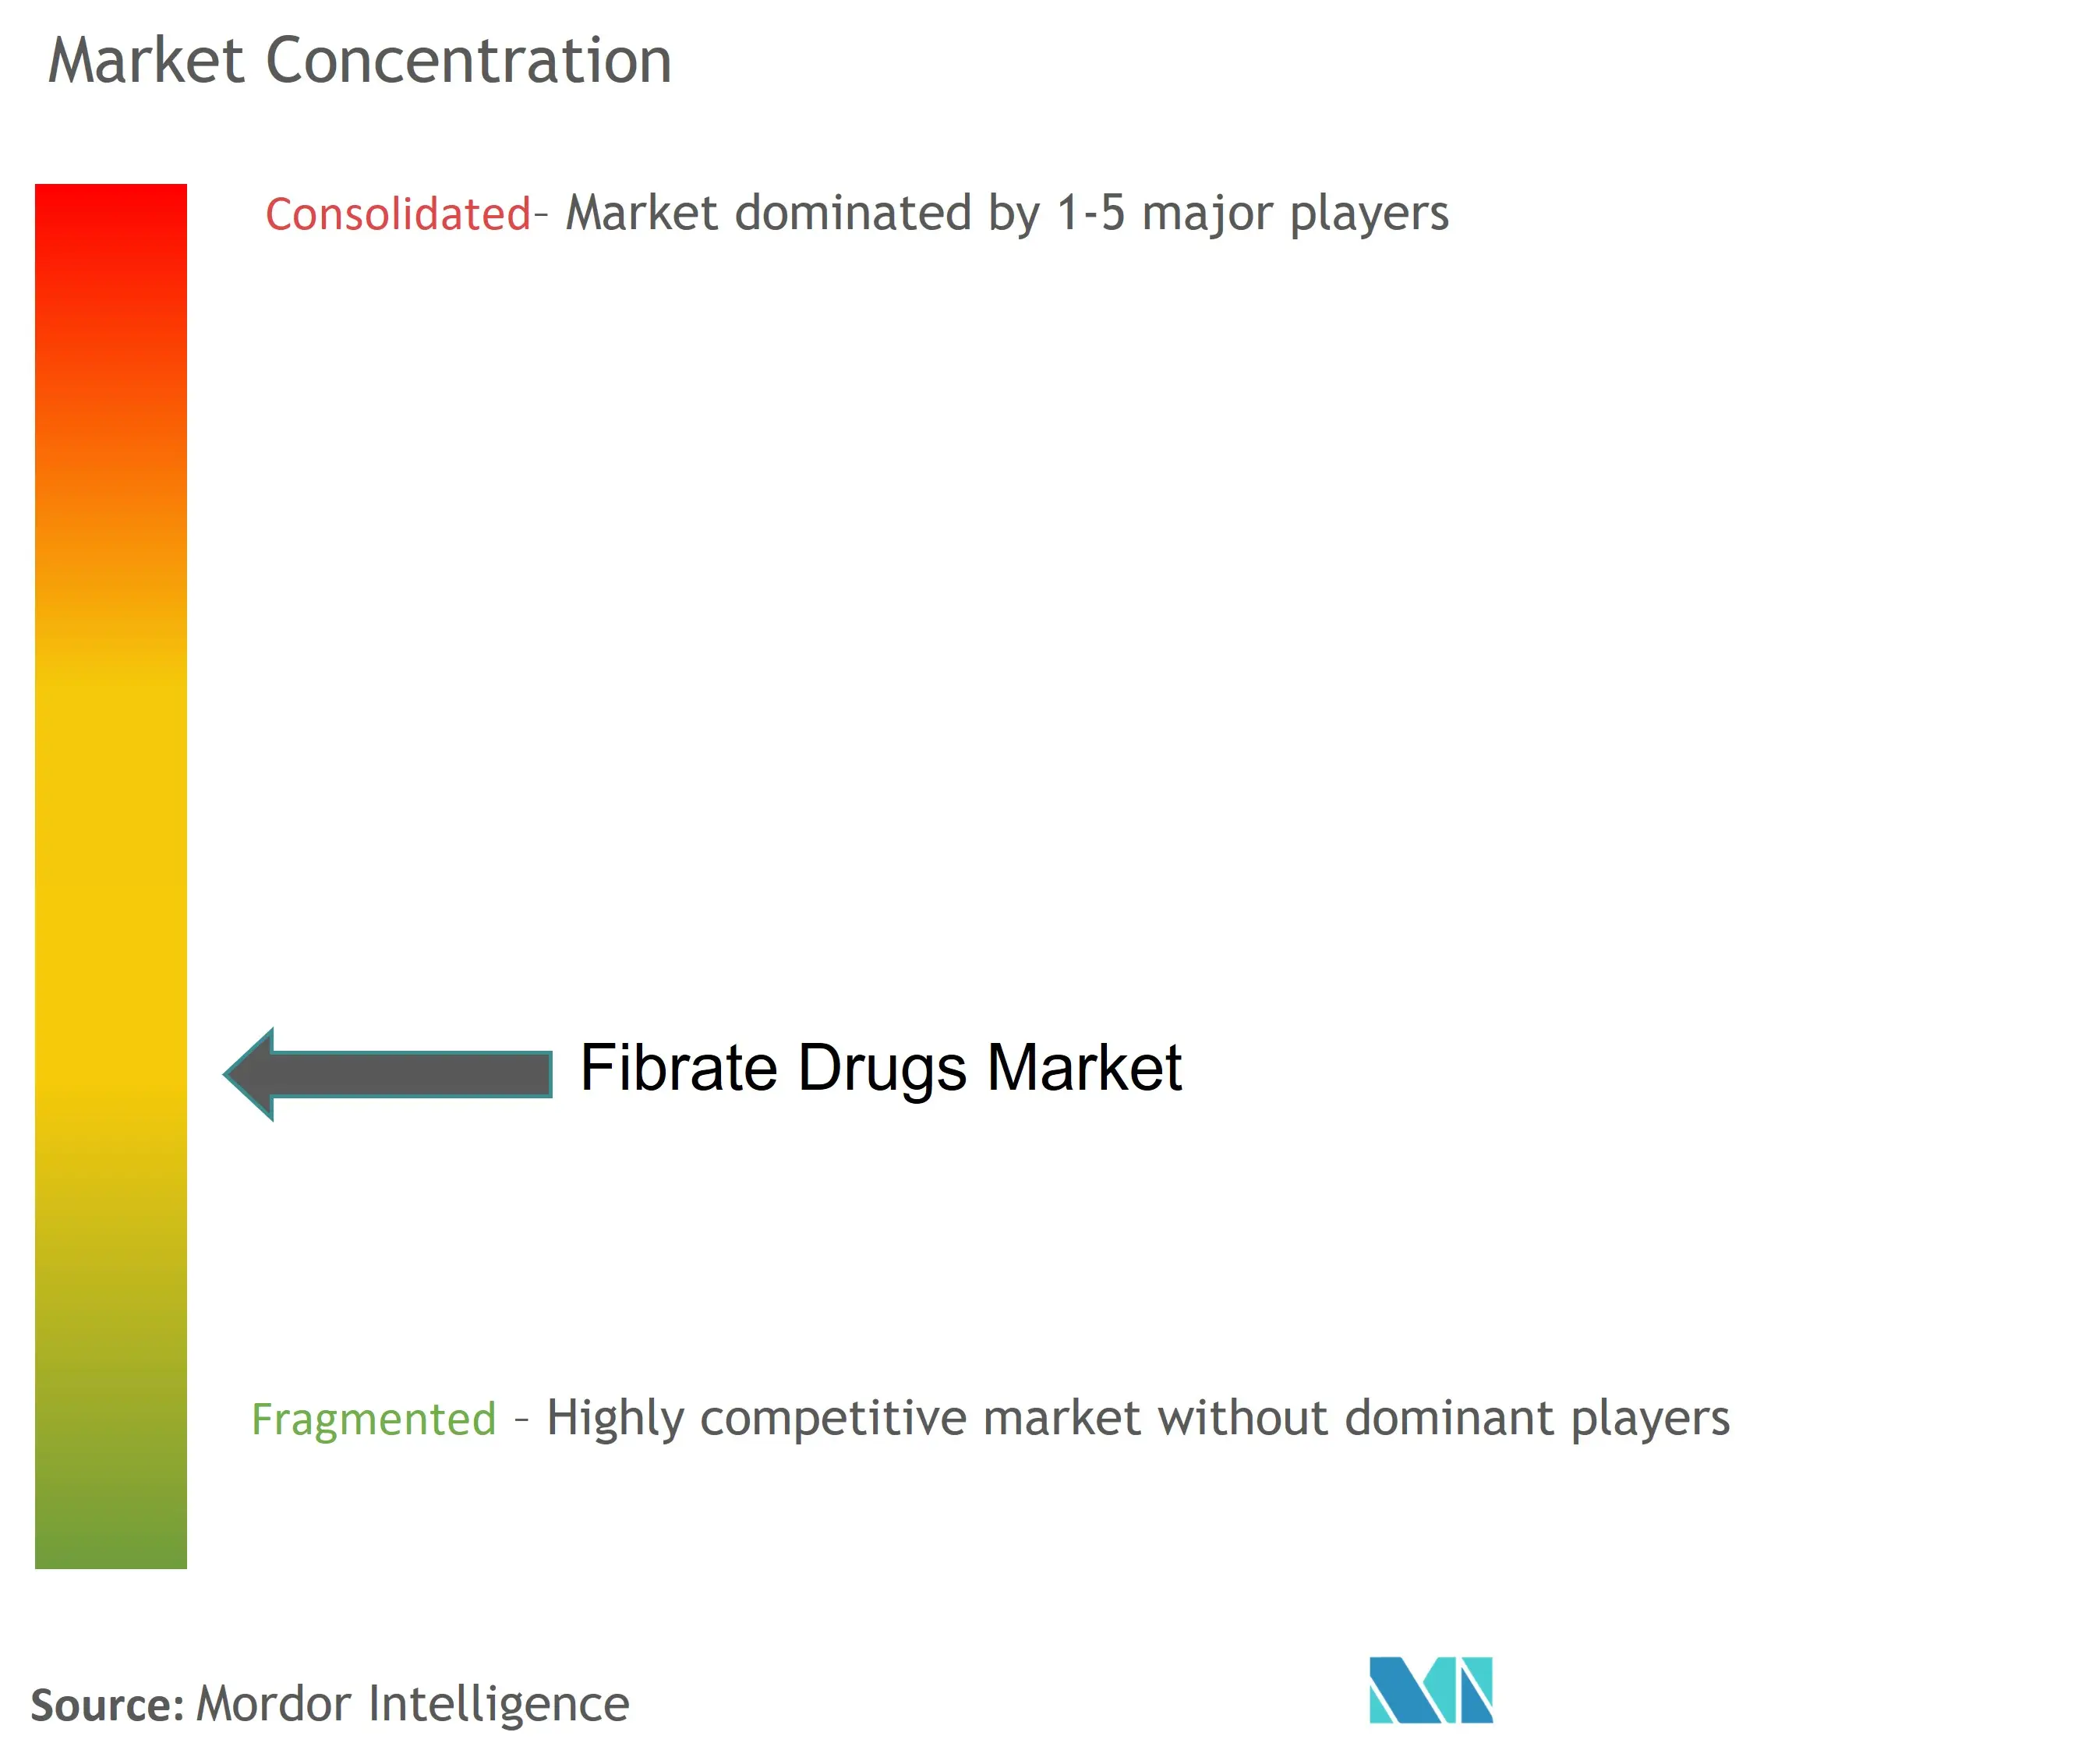 Marktkonzentration für Fibrat-Medikamente